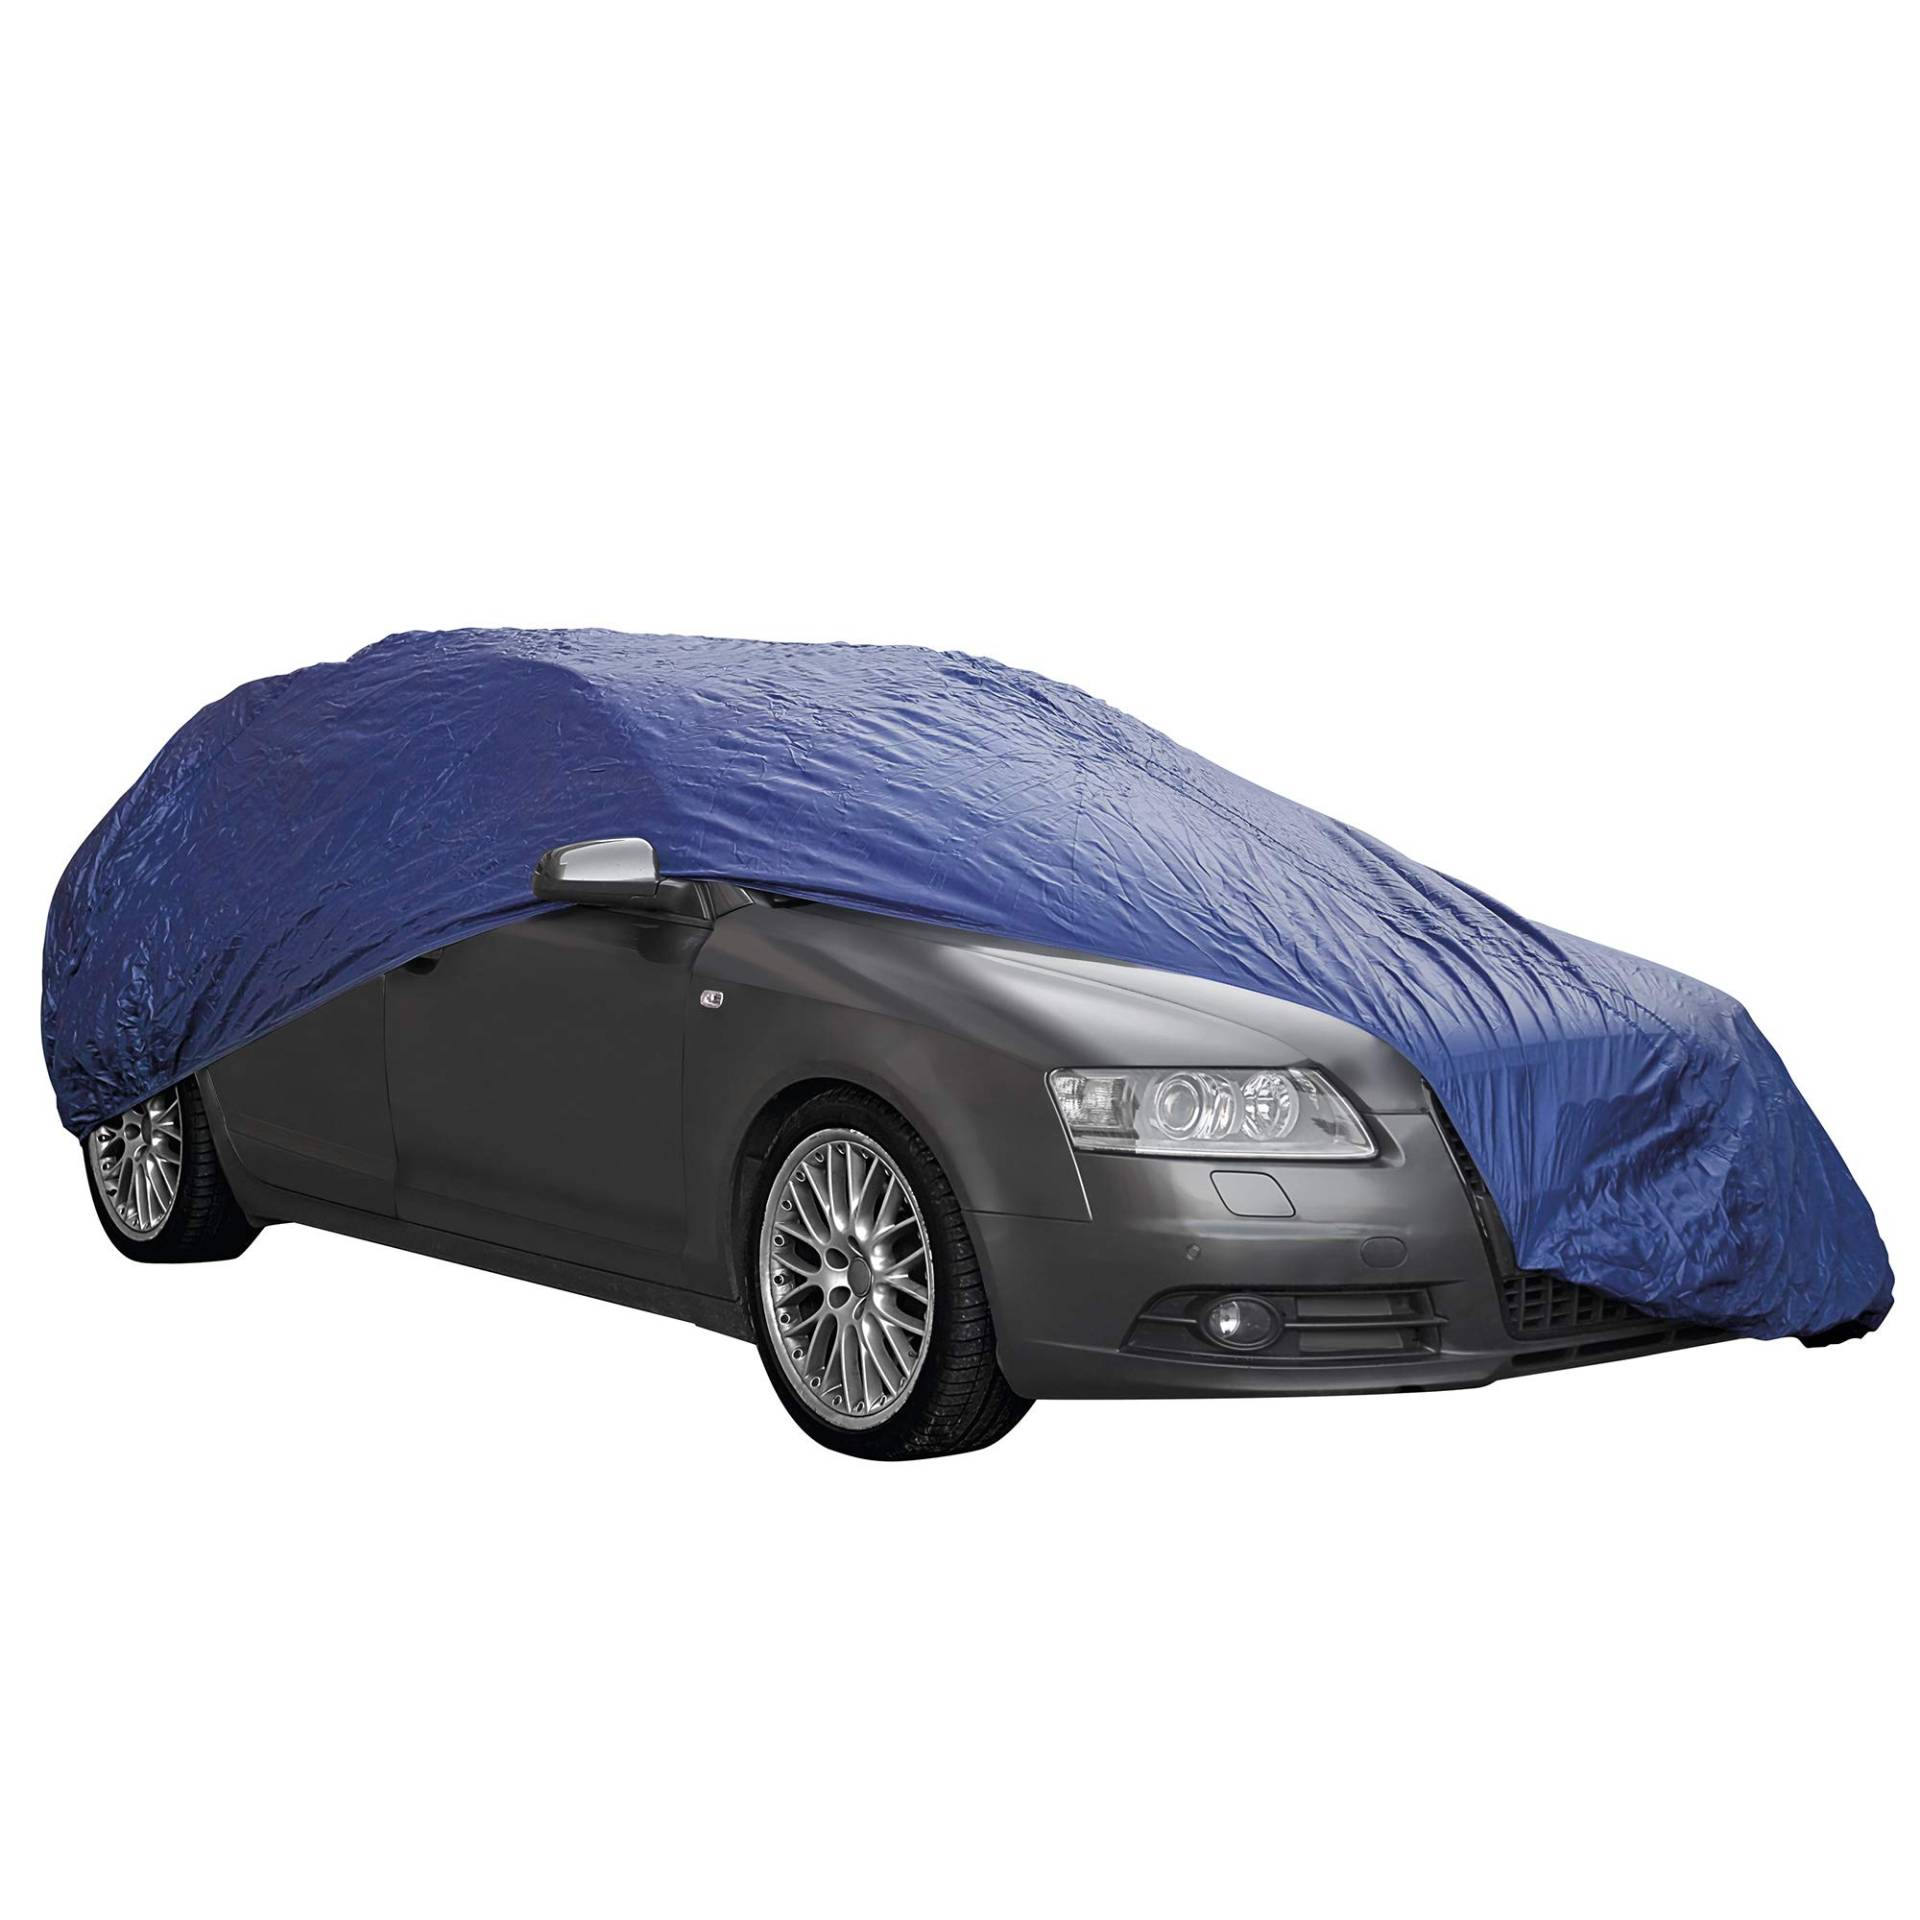 Indoor & Outdoor alle Jahr Schutz Atmungsaktiv Full Auto Cover (Extra Groß (530 x 175 x 120 cm)) von Sumex